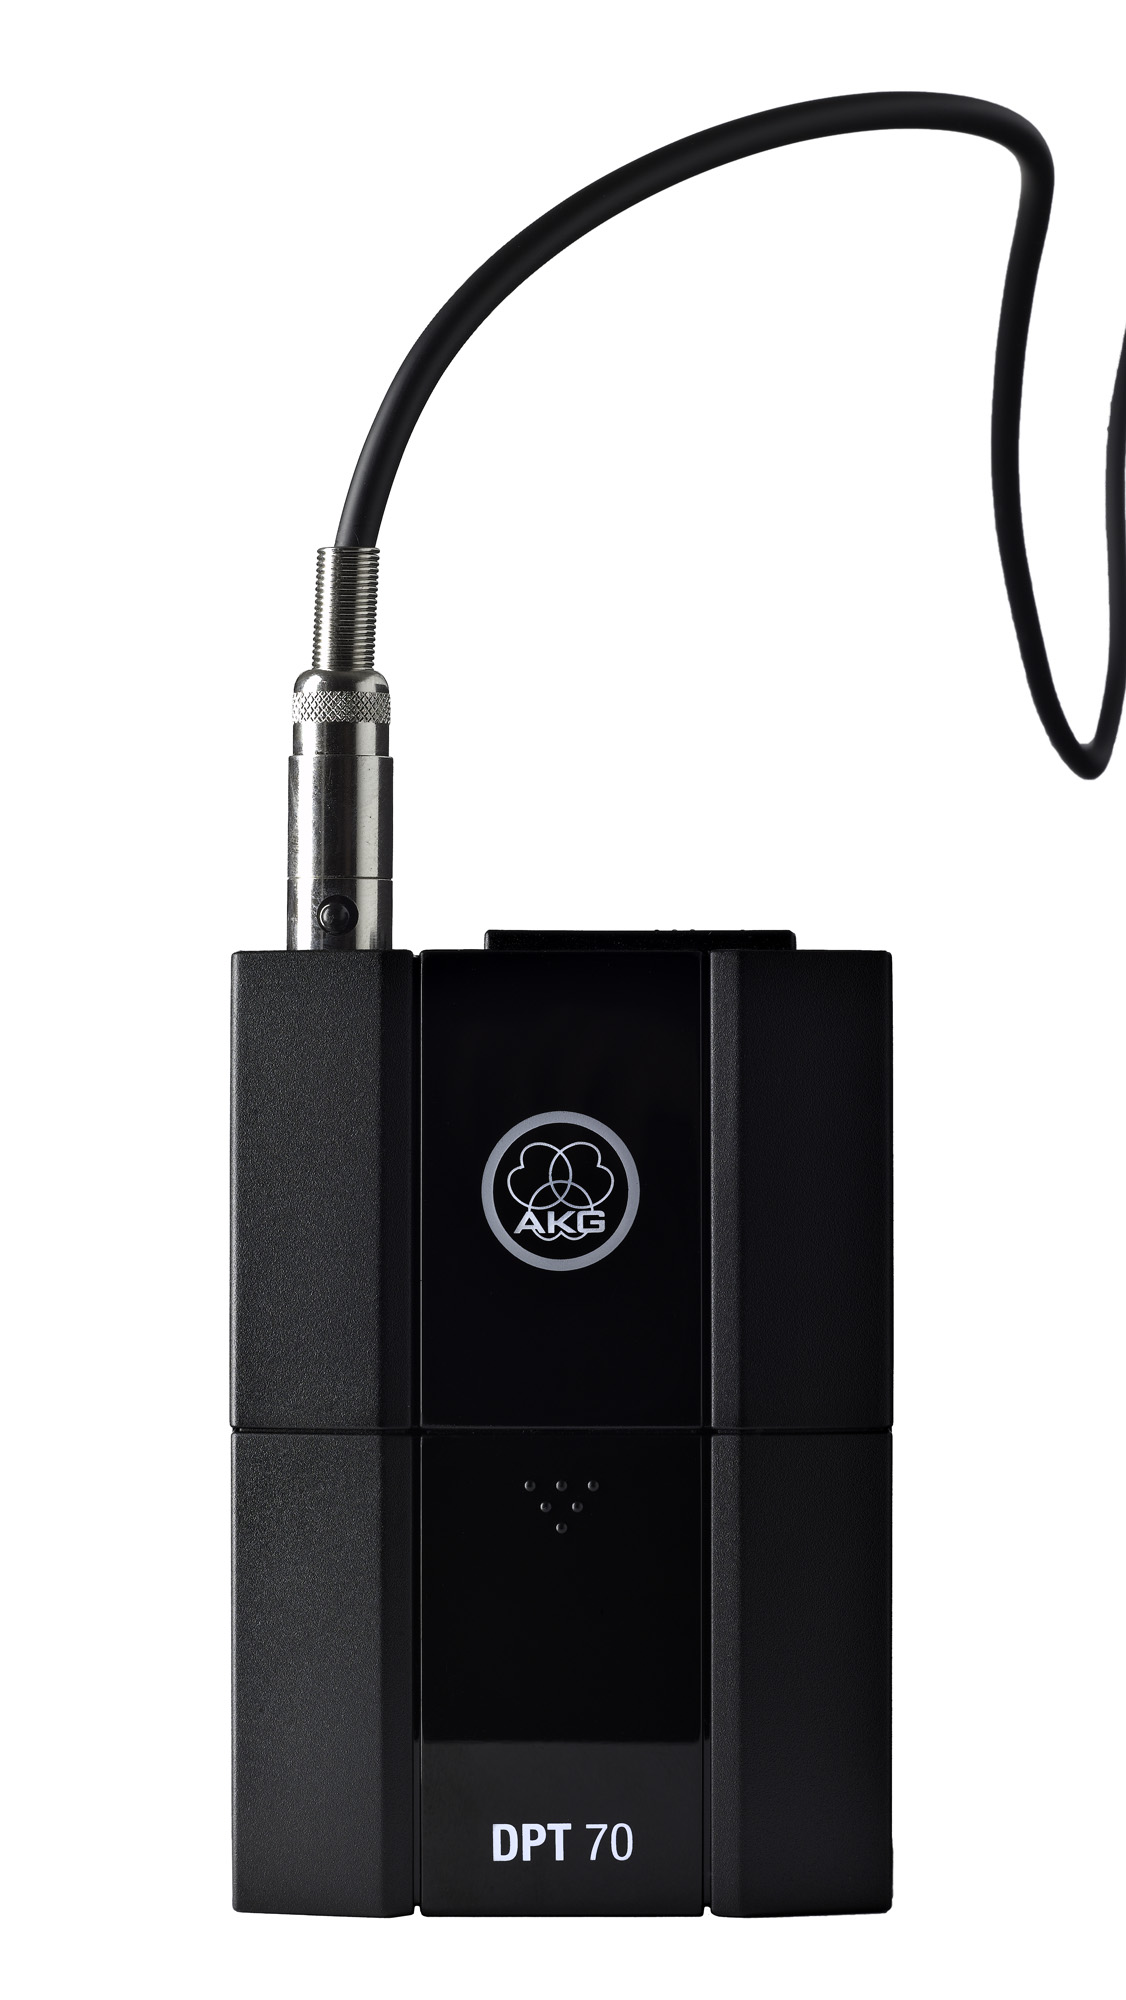 AKG AKG DPT70 Digital Pocket Bodypack Transmitter with Cable